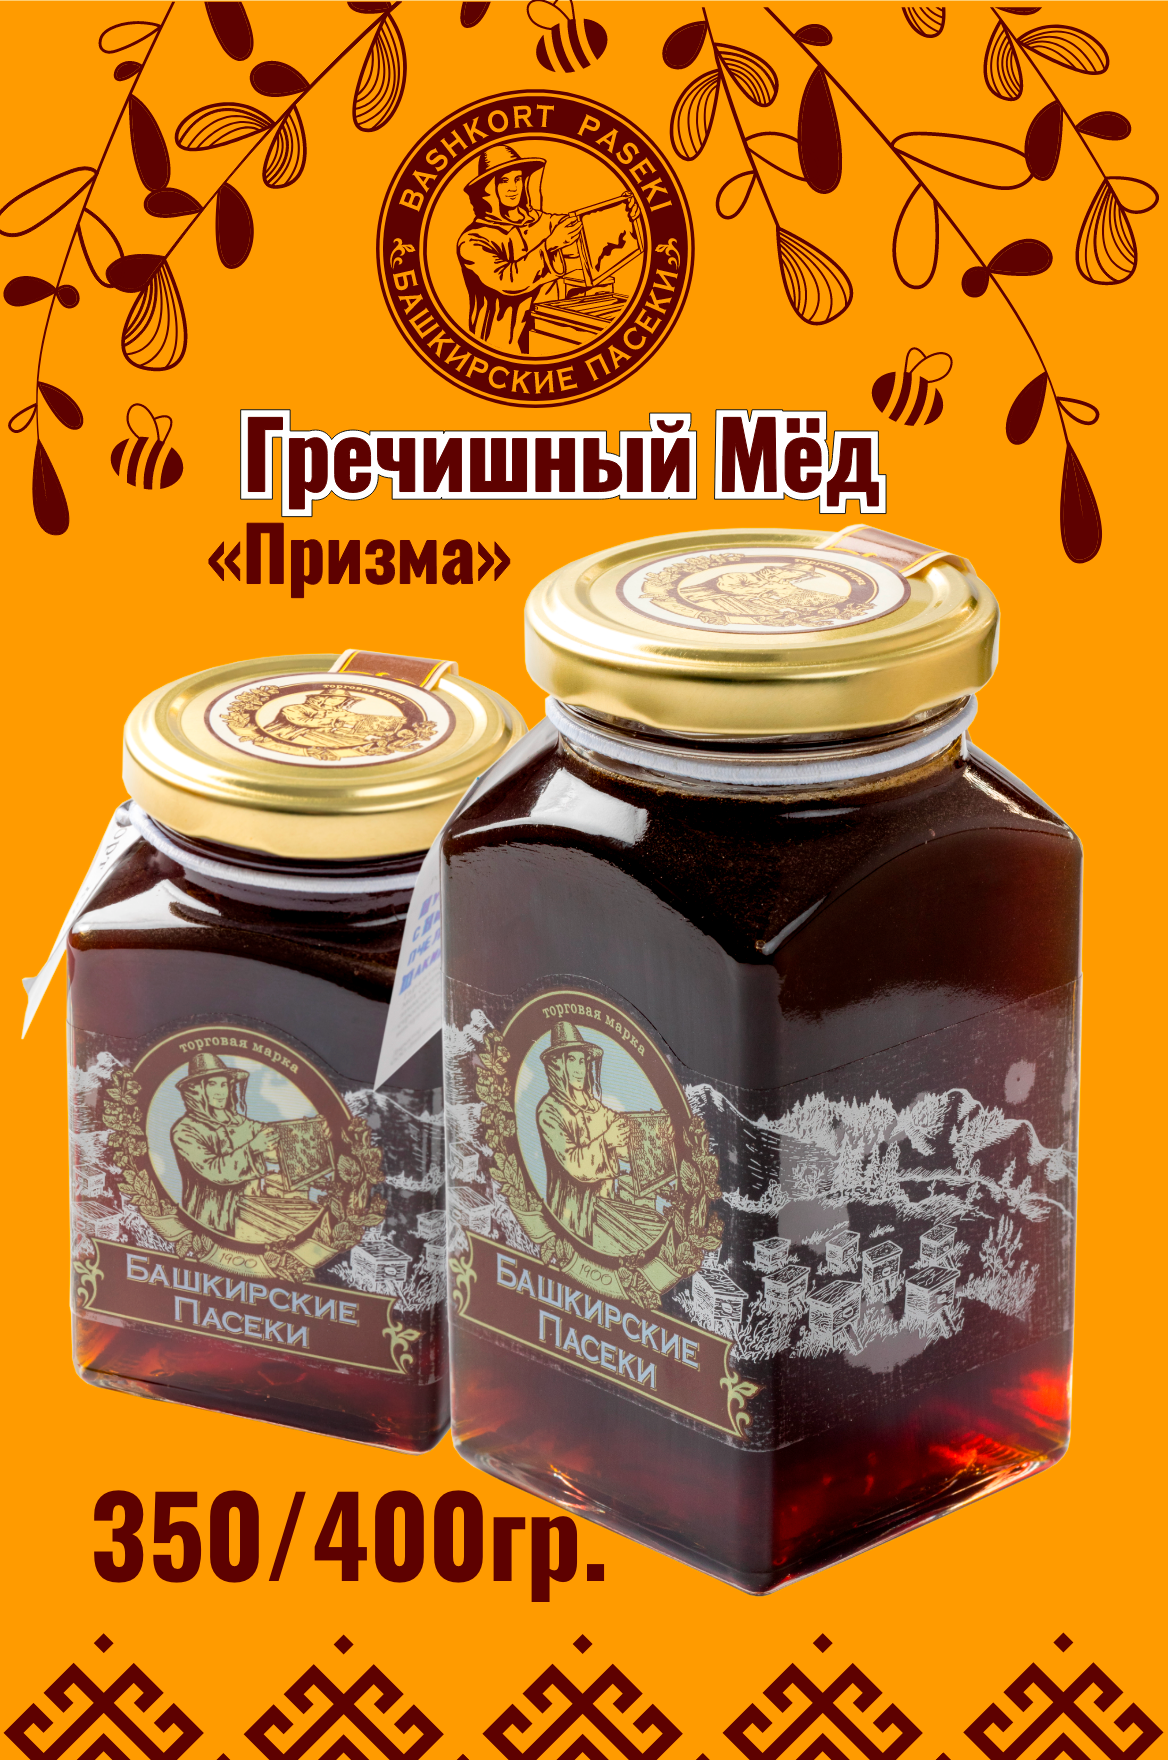 «Призма» гречишный мёд, 350 гр.